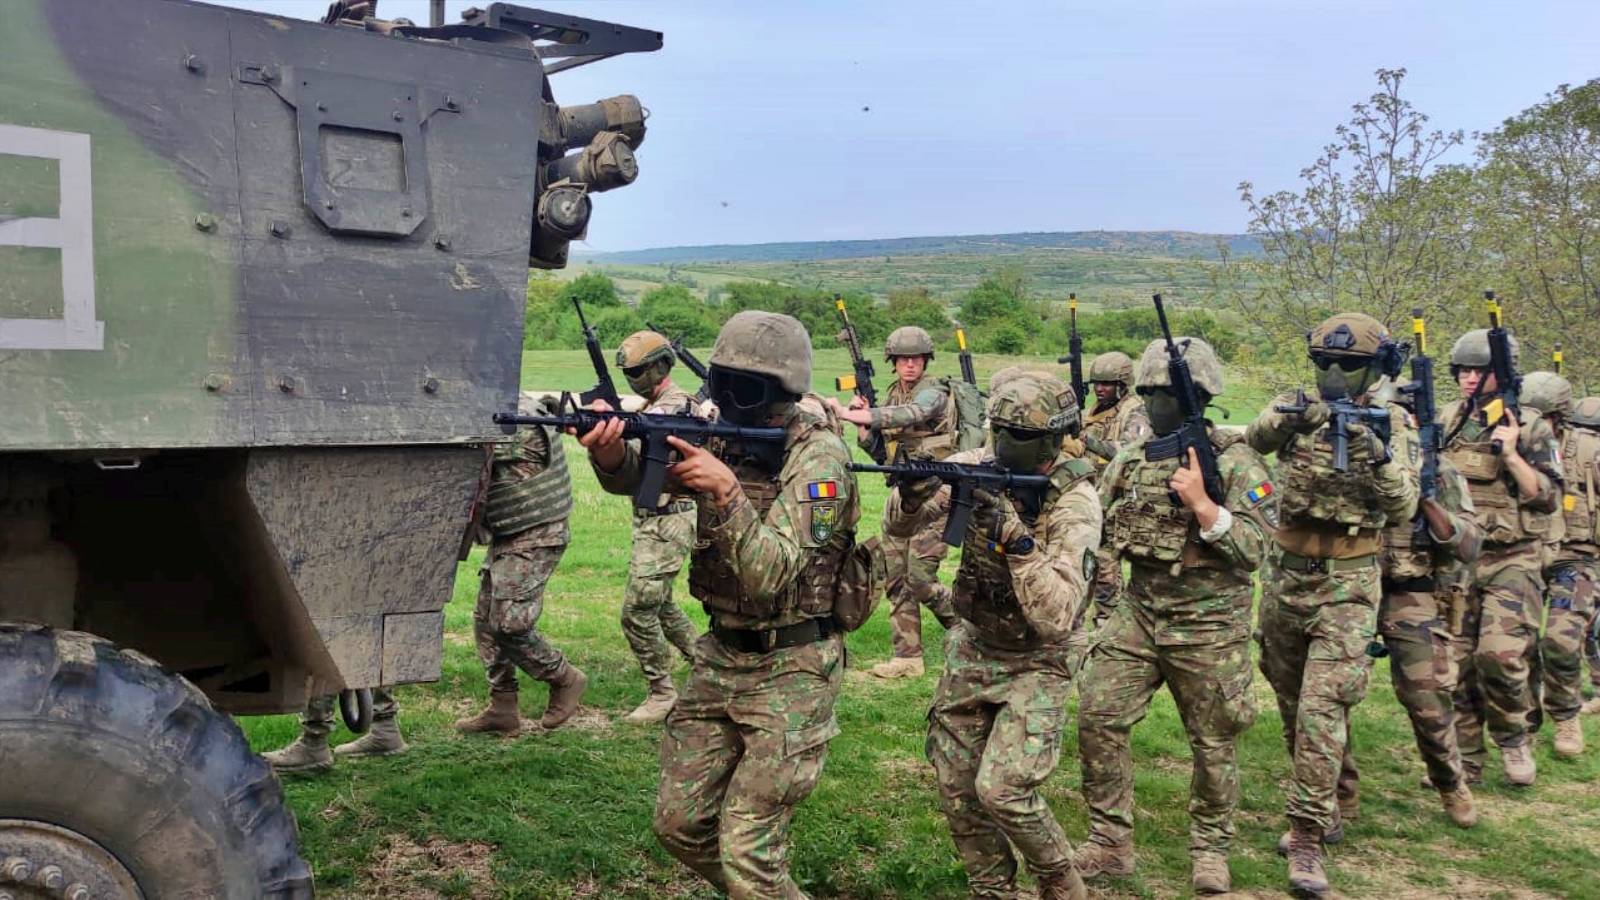 Rumænsk hær Vigtige officielle handlinger SIDSTE ØJEBLIK Rumænsk militær NATO fuld af krig